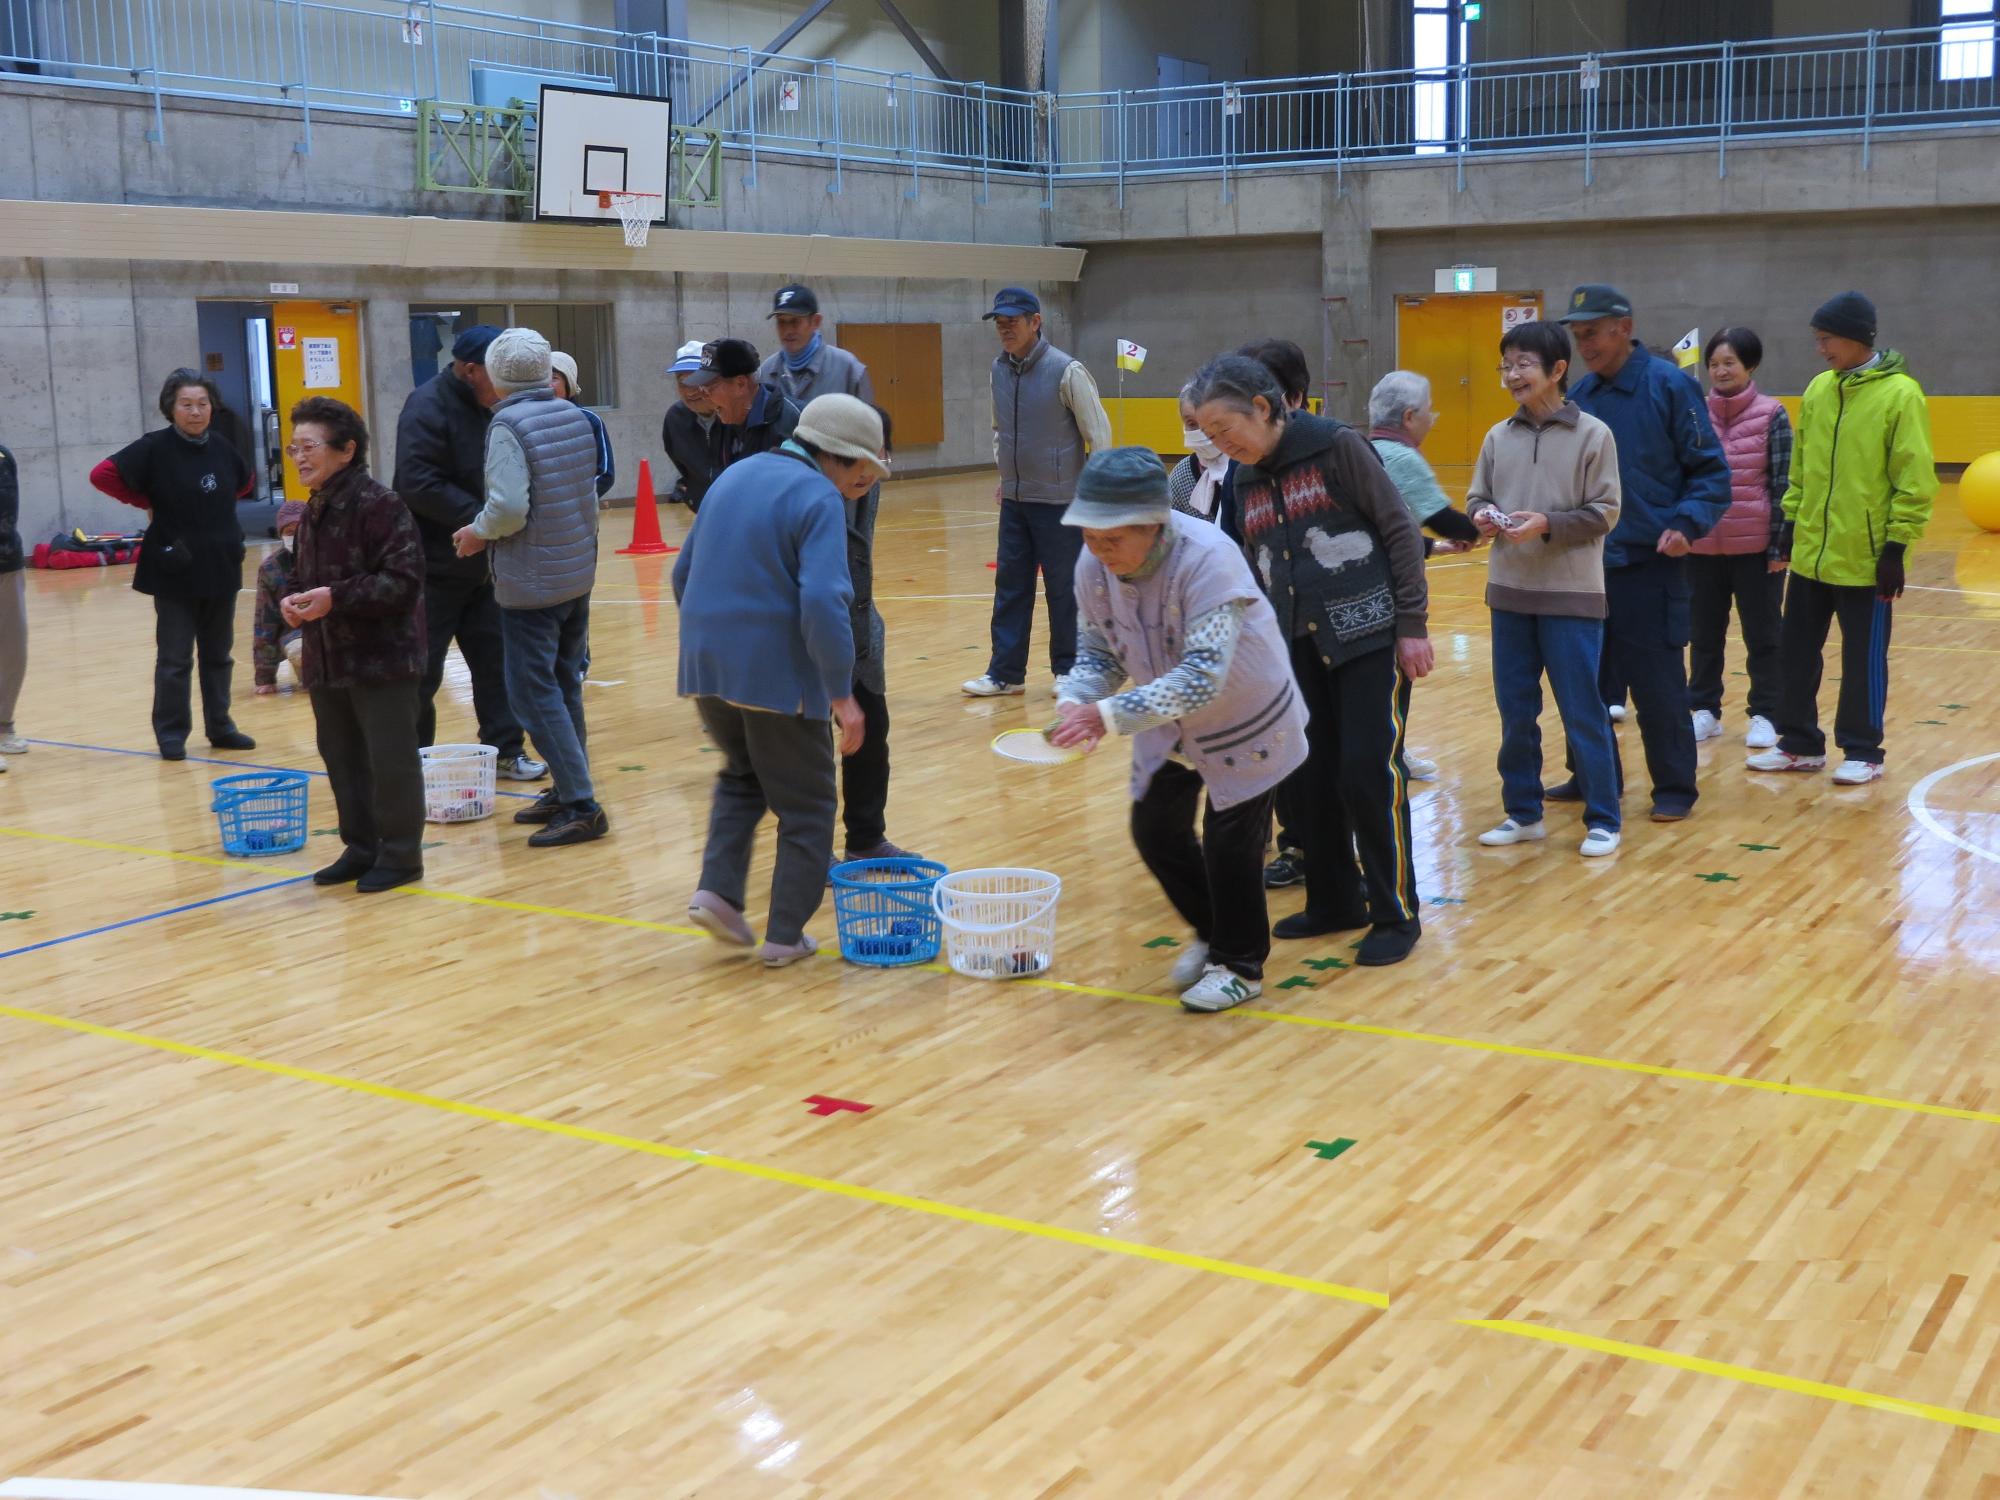 2組に分かれた人達が体育館の床に置かれた白と青のかごの中にお手玉のようなものを順番に入れるスポーツをしている写真